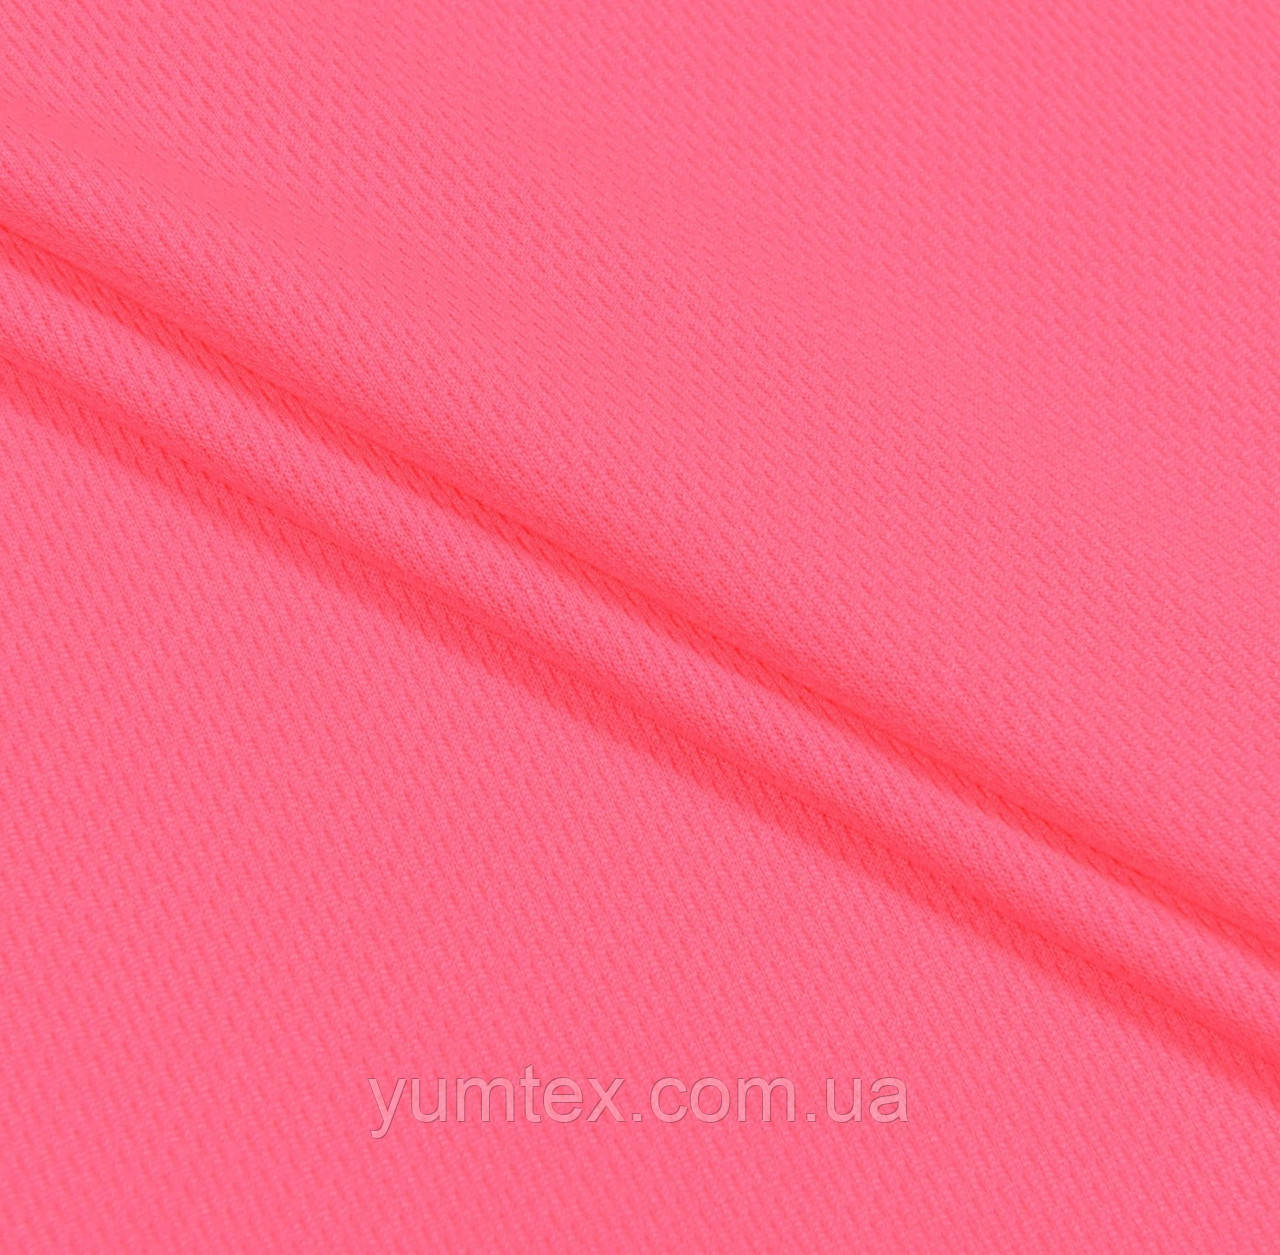 Тканина мікро лакосту для спортивних футболок шортів яскраво-рожева